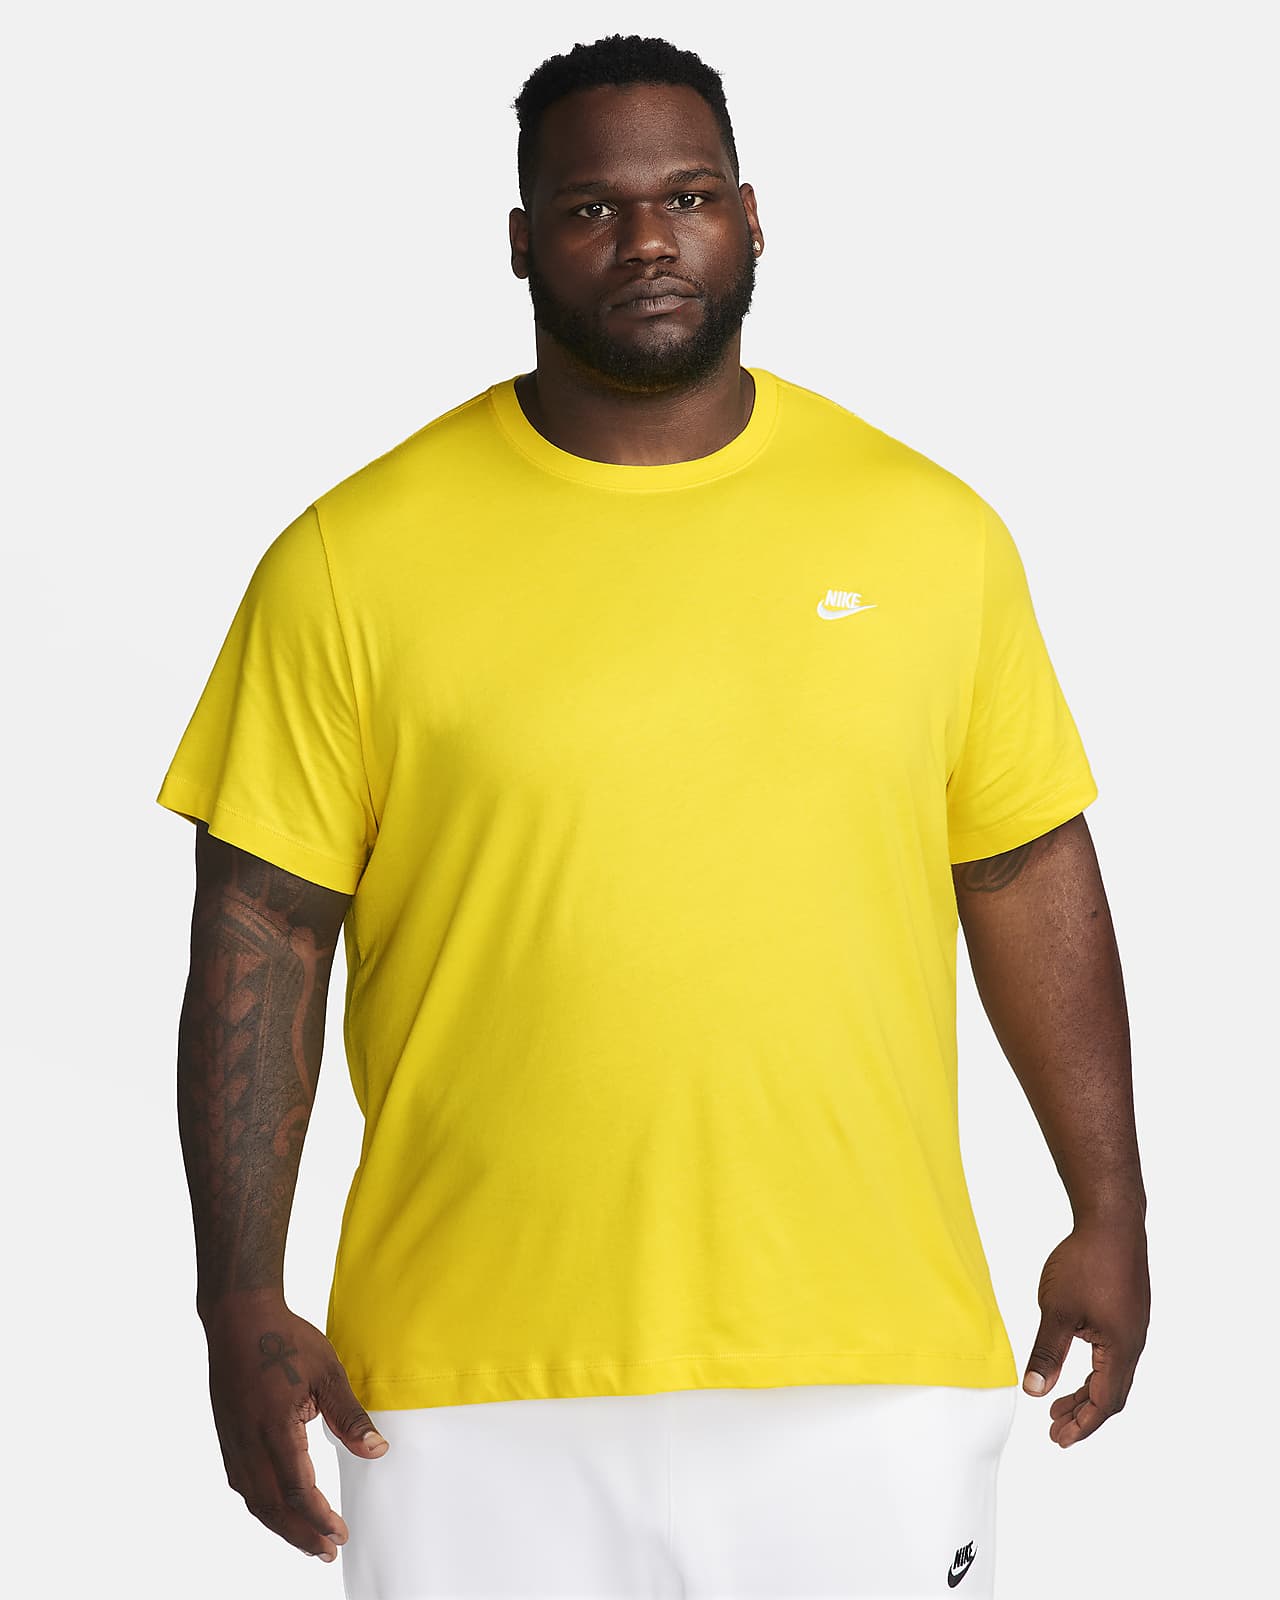 Nike Air Men's T-Shirt. Nike LU